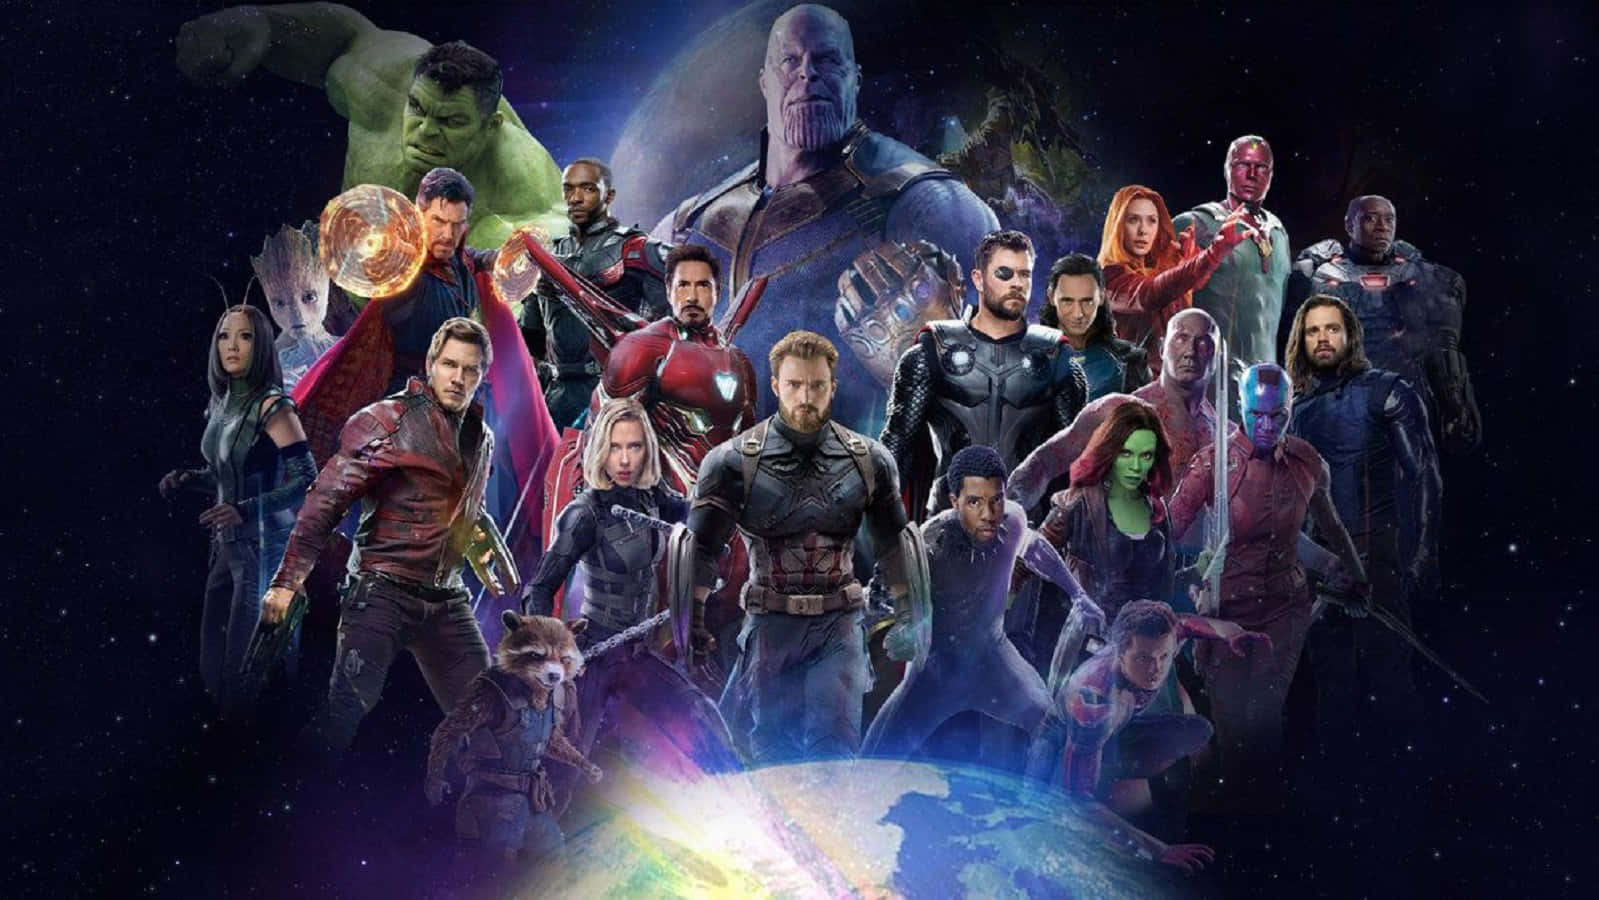 Dieavengers Versammeln Sich, Um Das Universum Vor Thanos In Avengers: Infinity War Zu Beschützen.